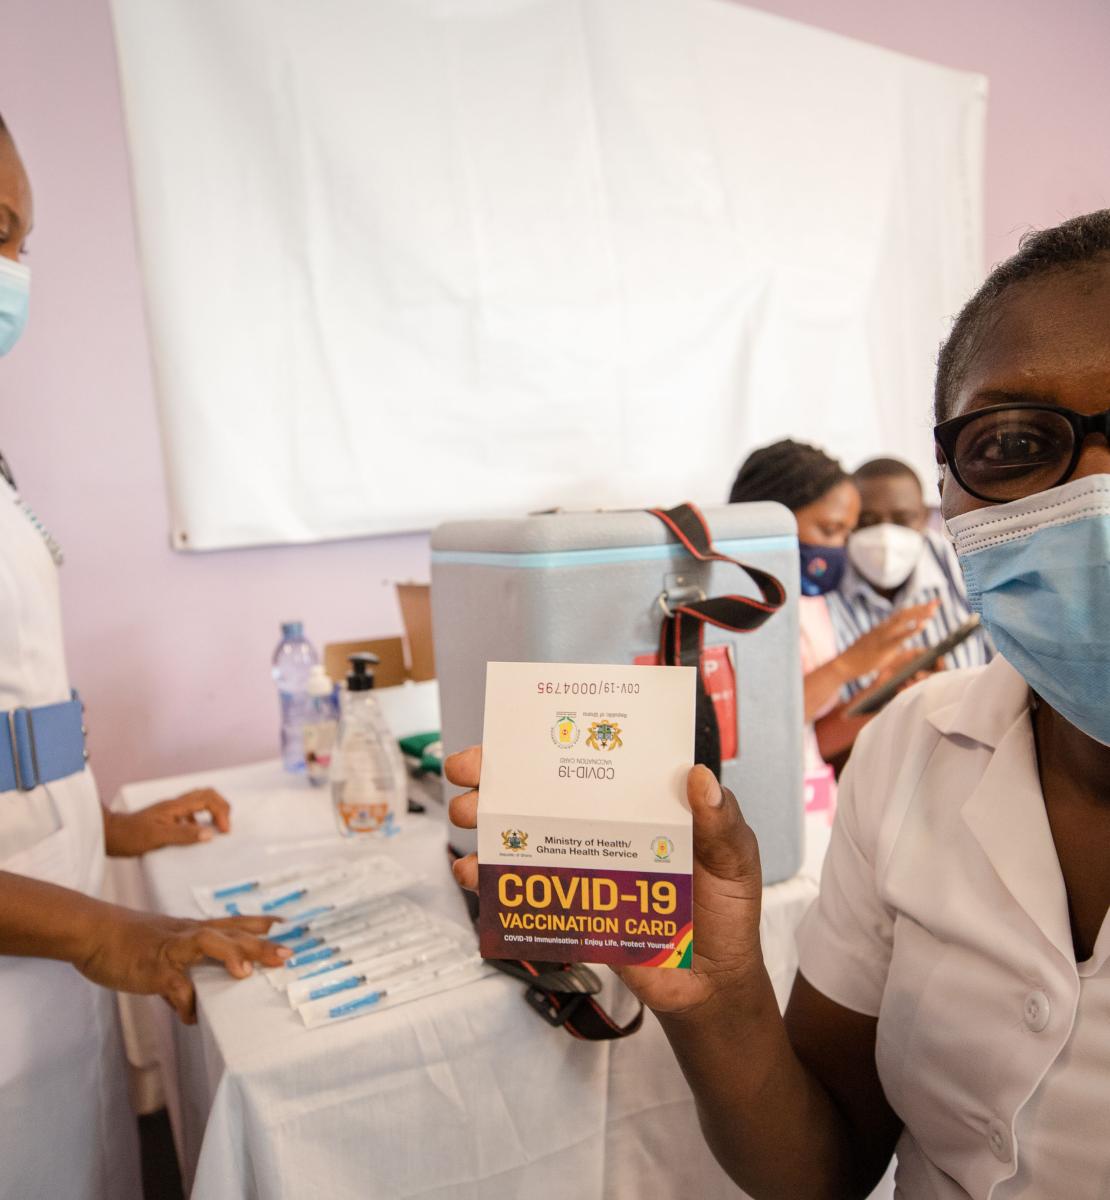 Una profesional de la salud en un centro de vacunación muestra con orgullo la tarjeta de vacunación contra la COVID-19 que verifica que ha recibido la vacuna.